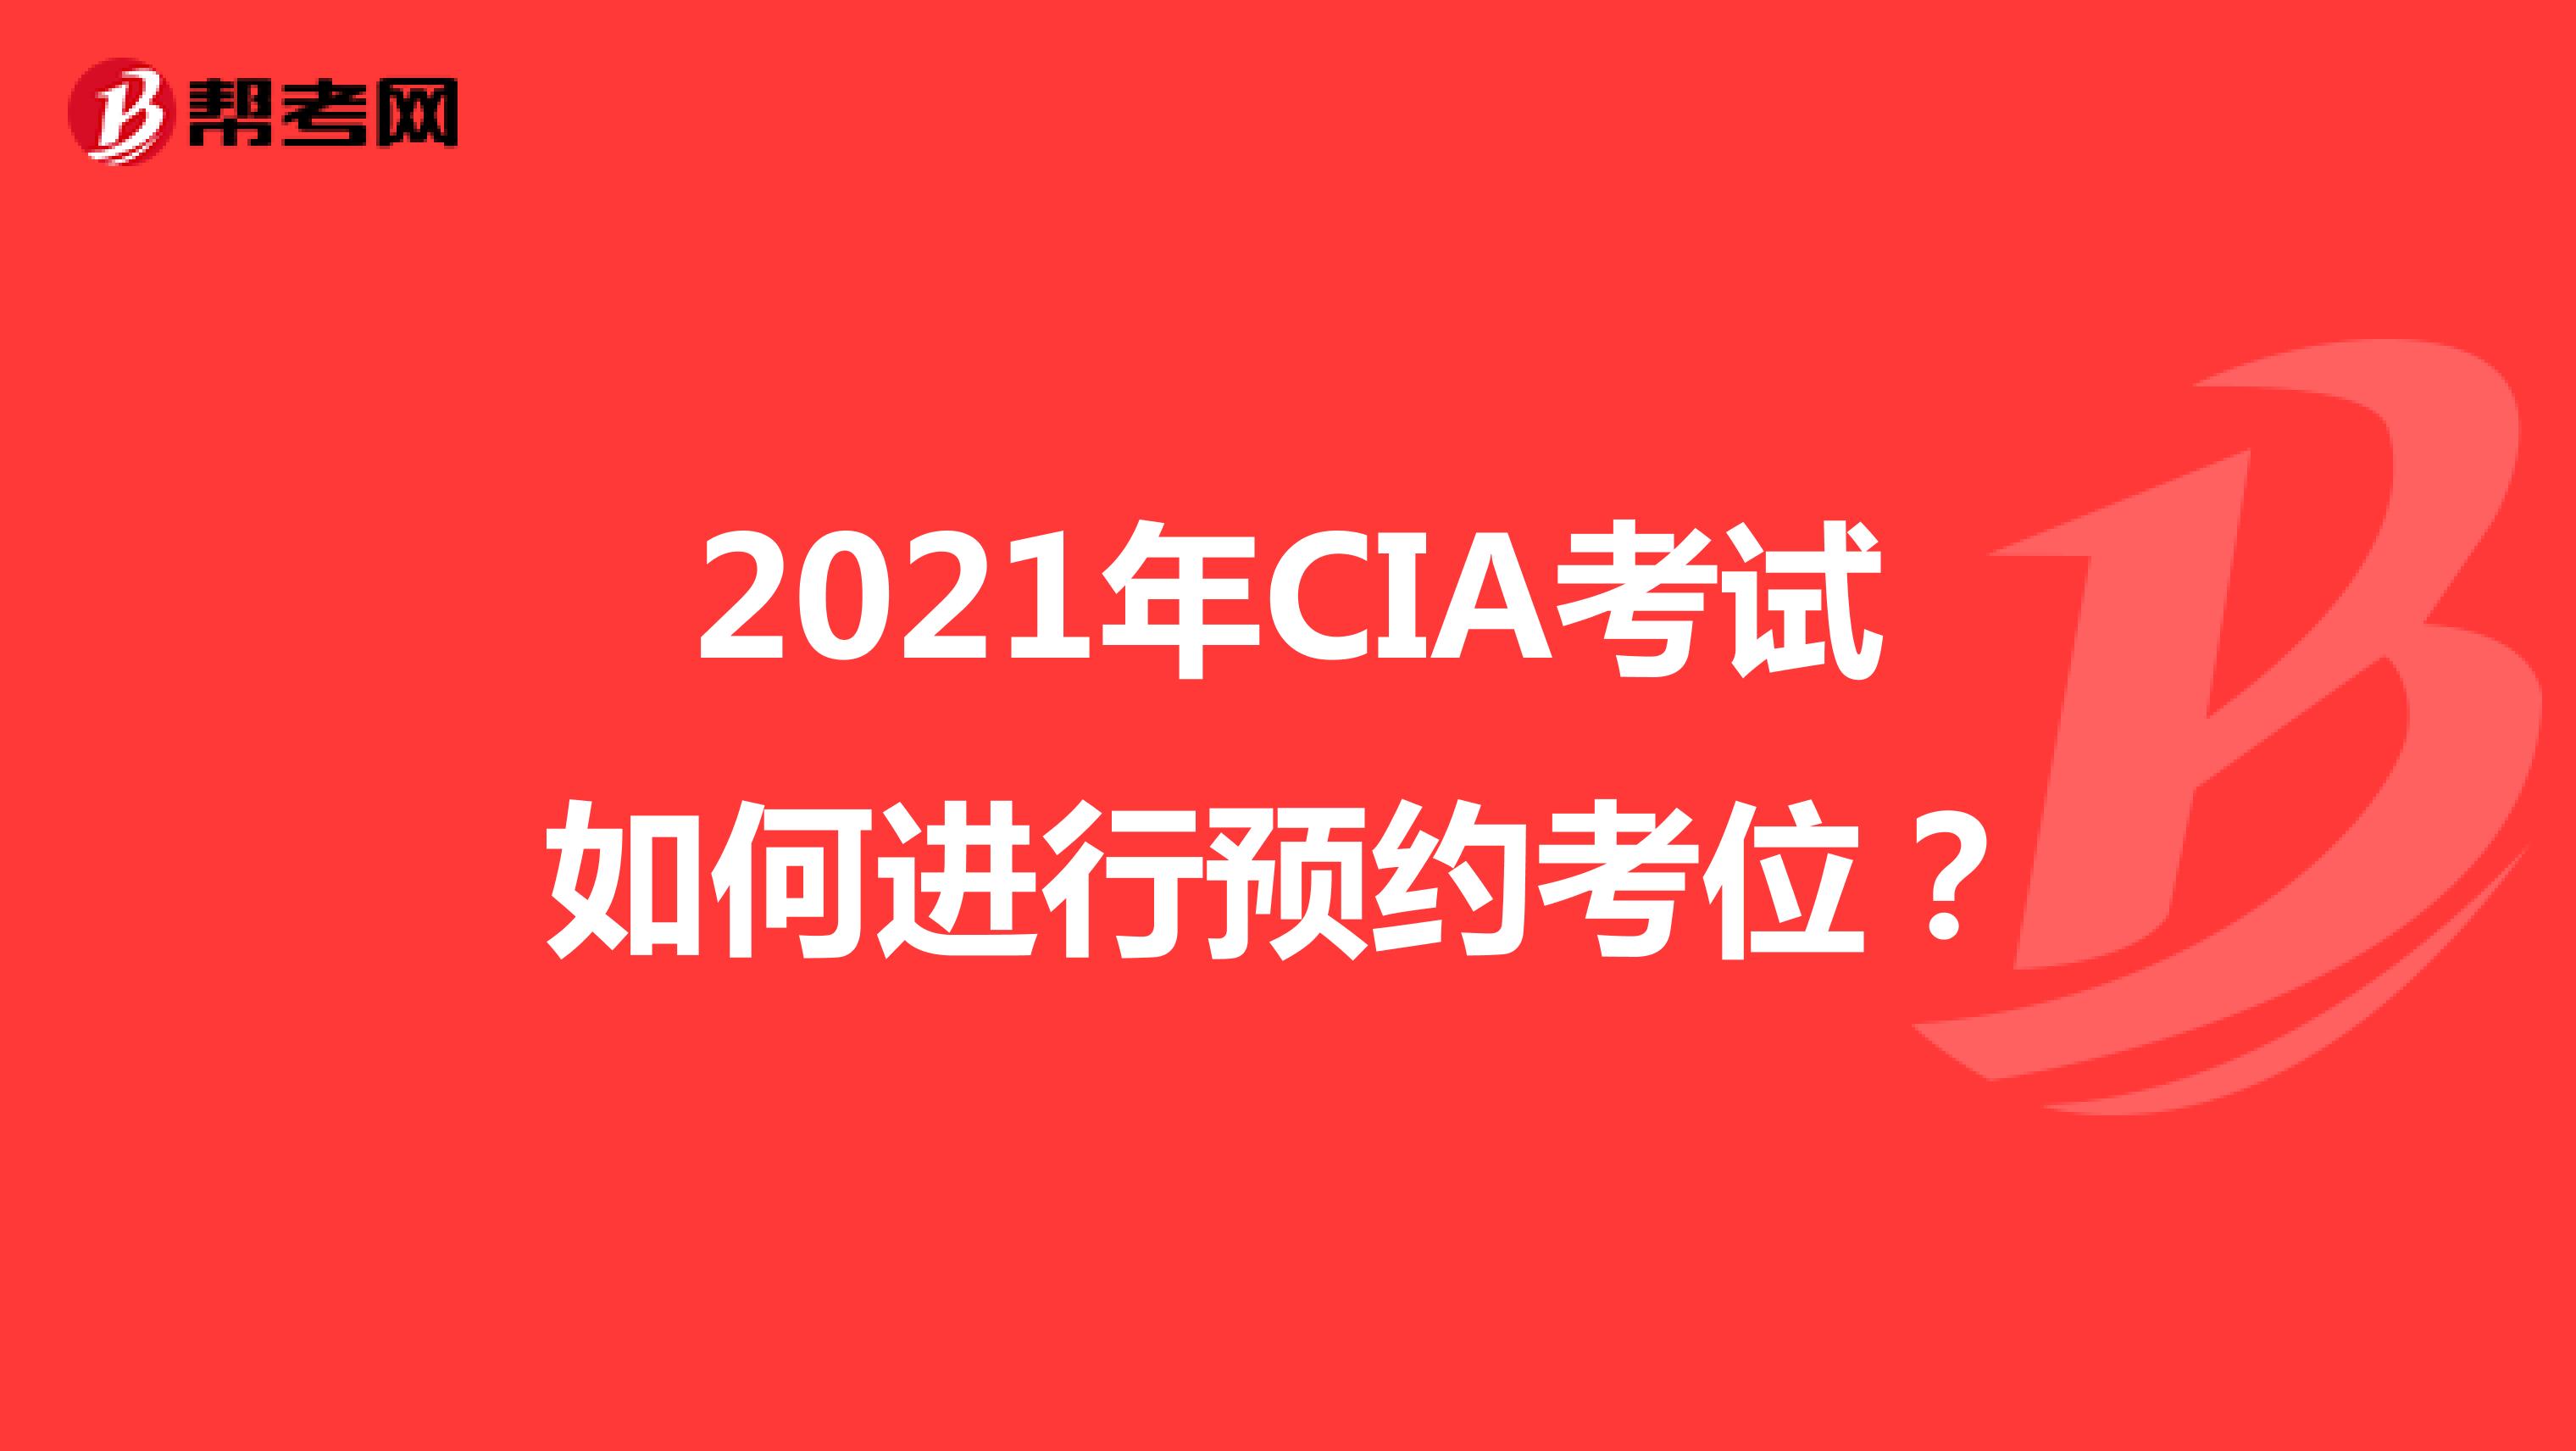 2021年CIA考试如何进行预约考位？